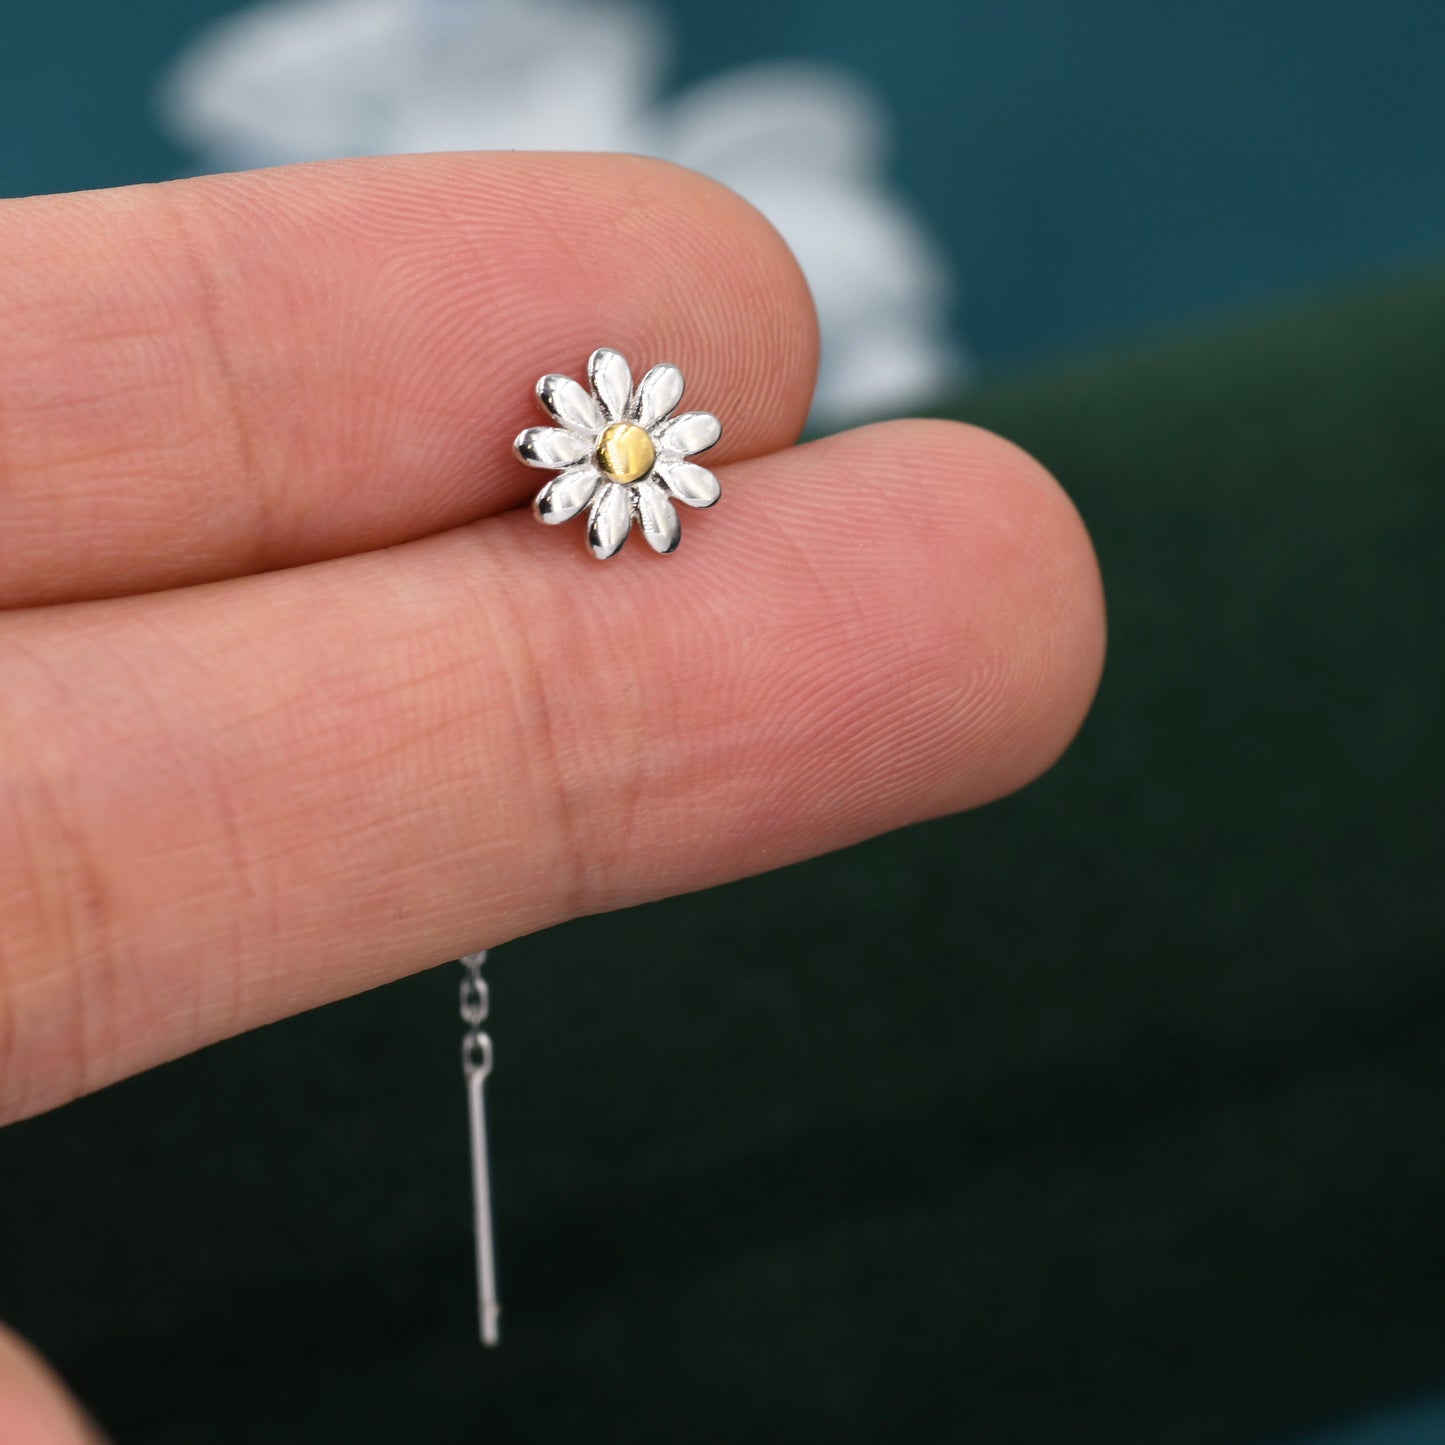 Daisy Chain Threader Earrings in Sterling Silver, Daisy Flower with Dangle Chain Earrings,  Flower Chain Earrings